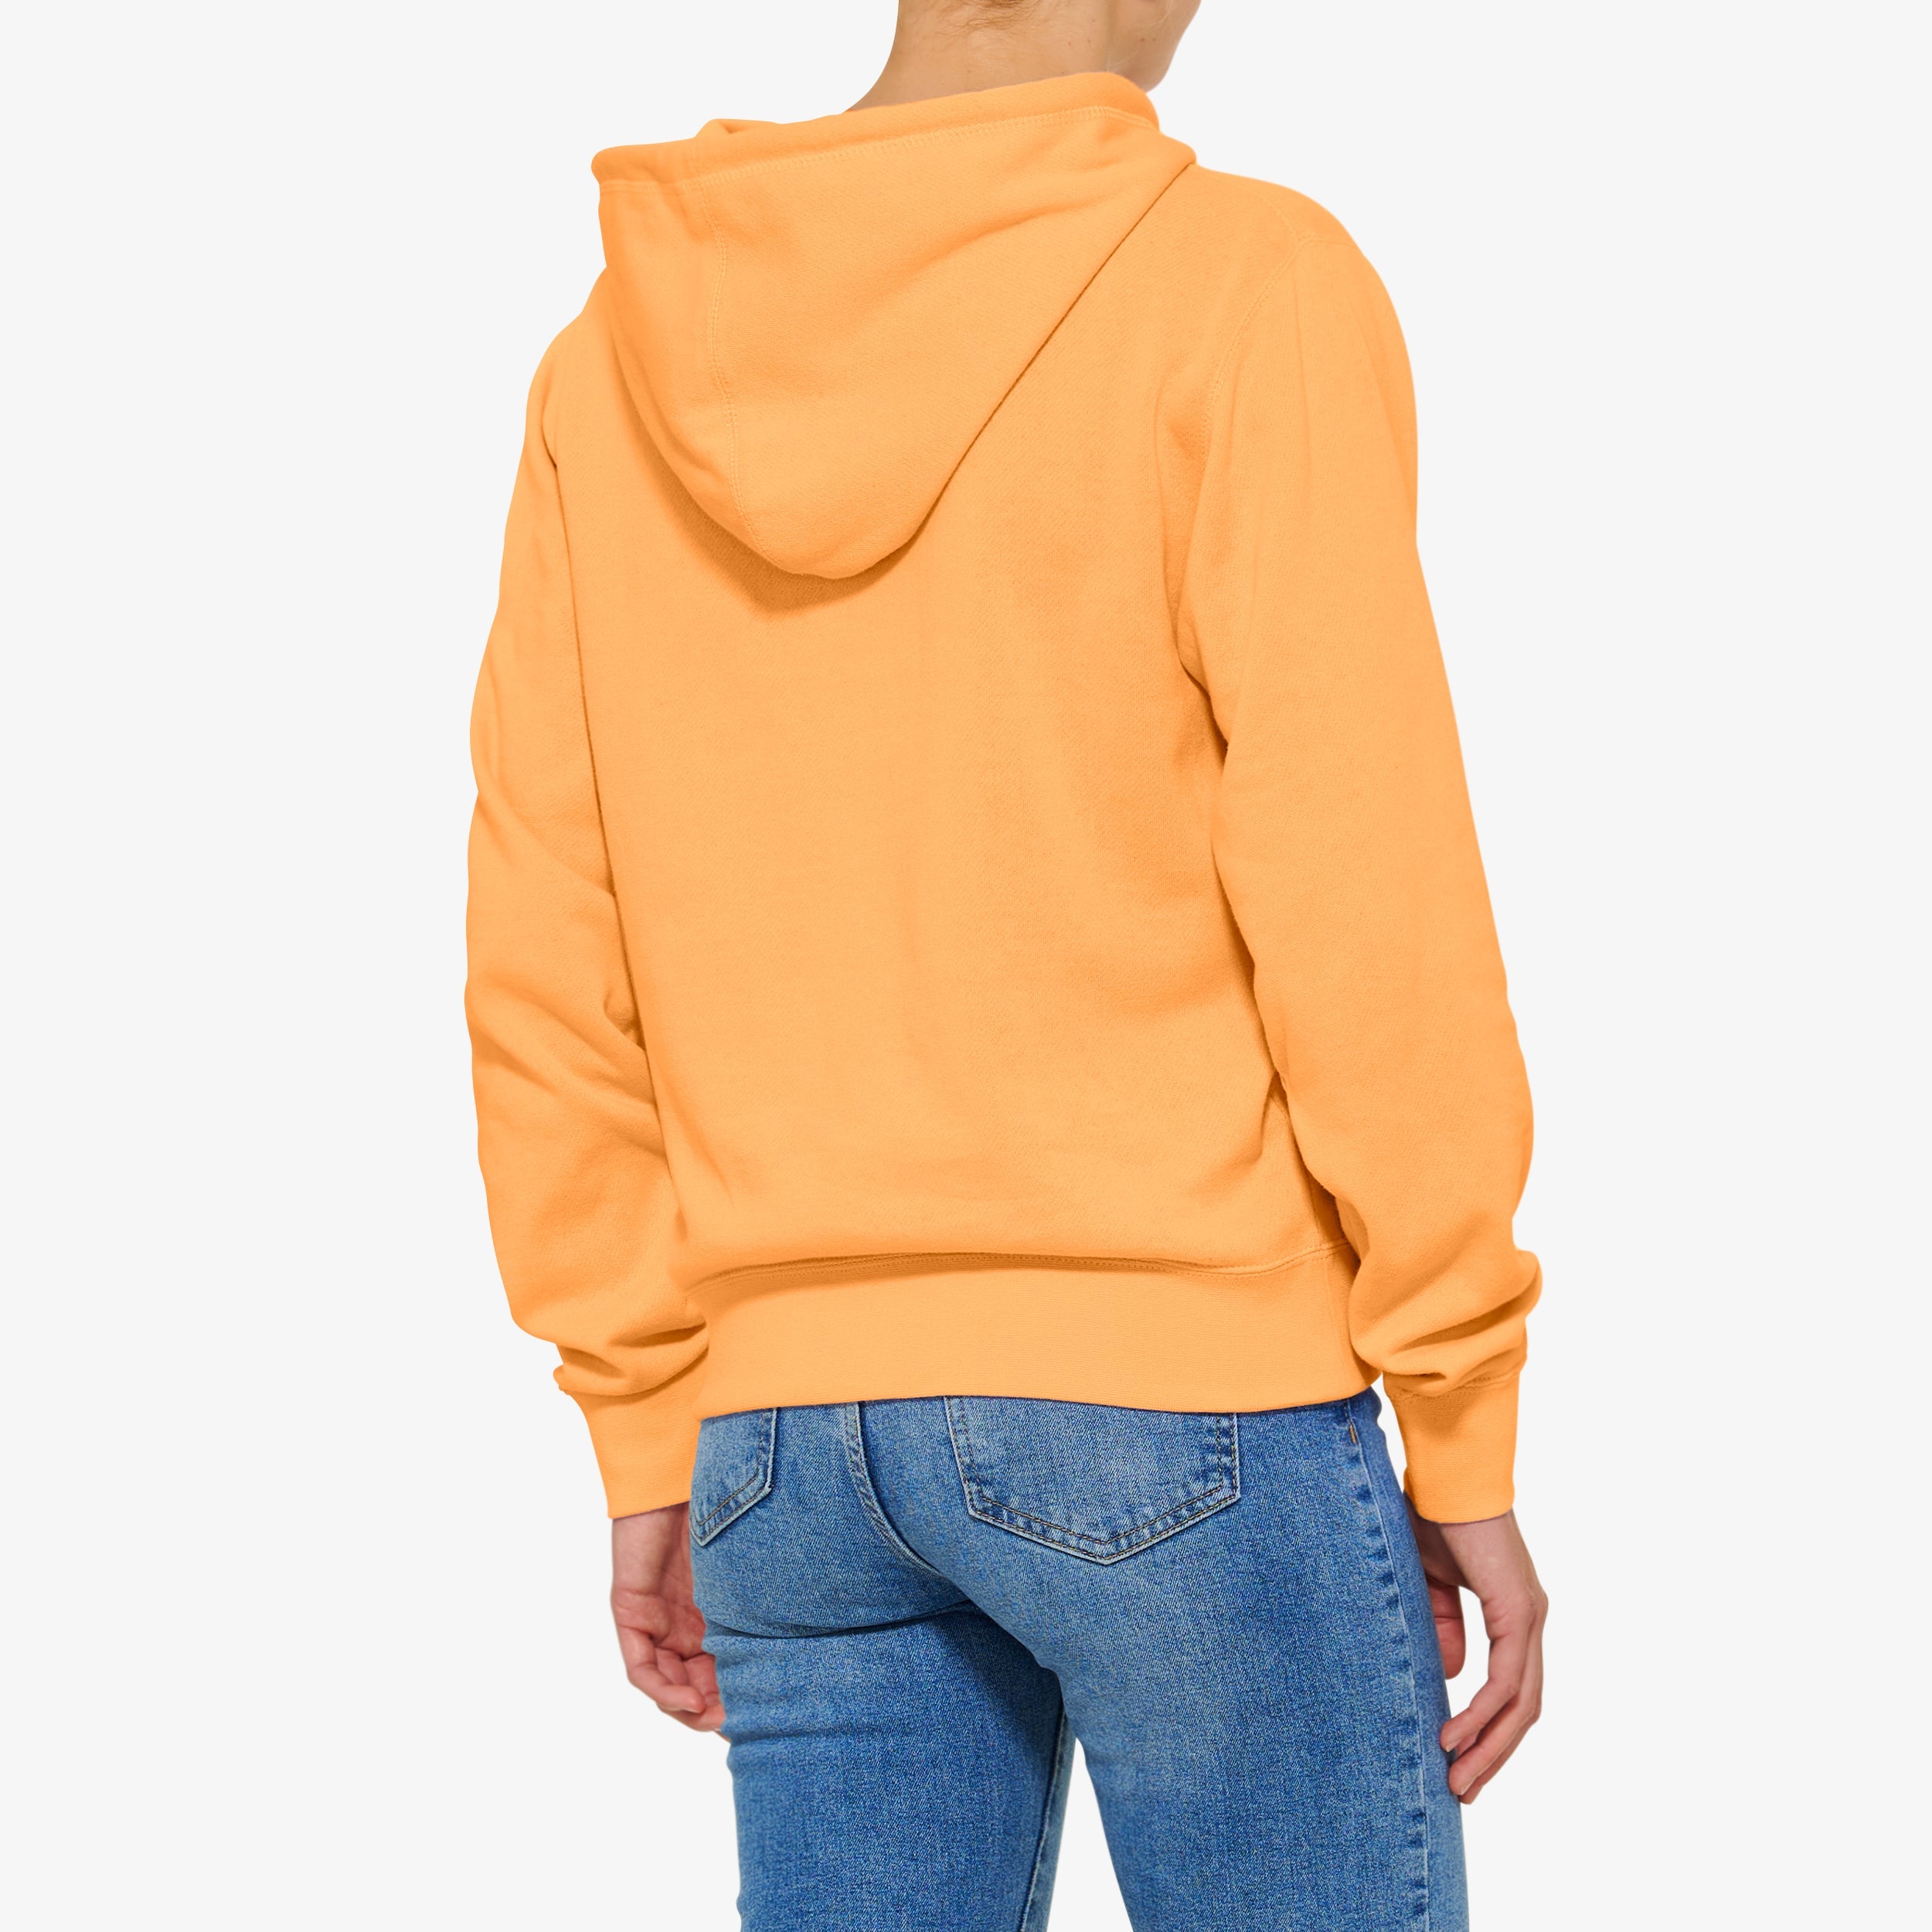 KANAPALI Women's Pullover Hoodie Fleece Orange